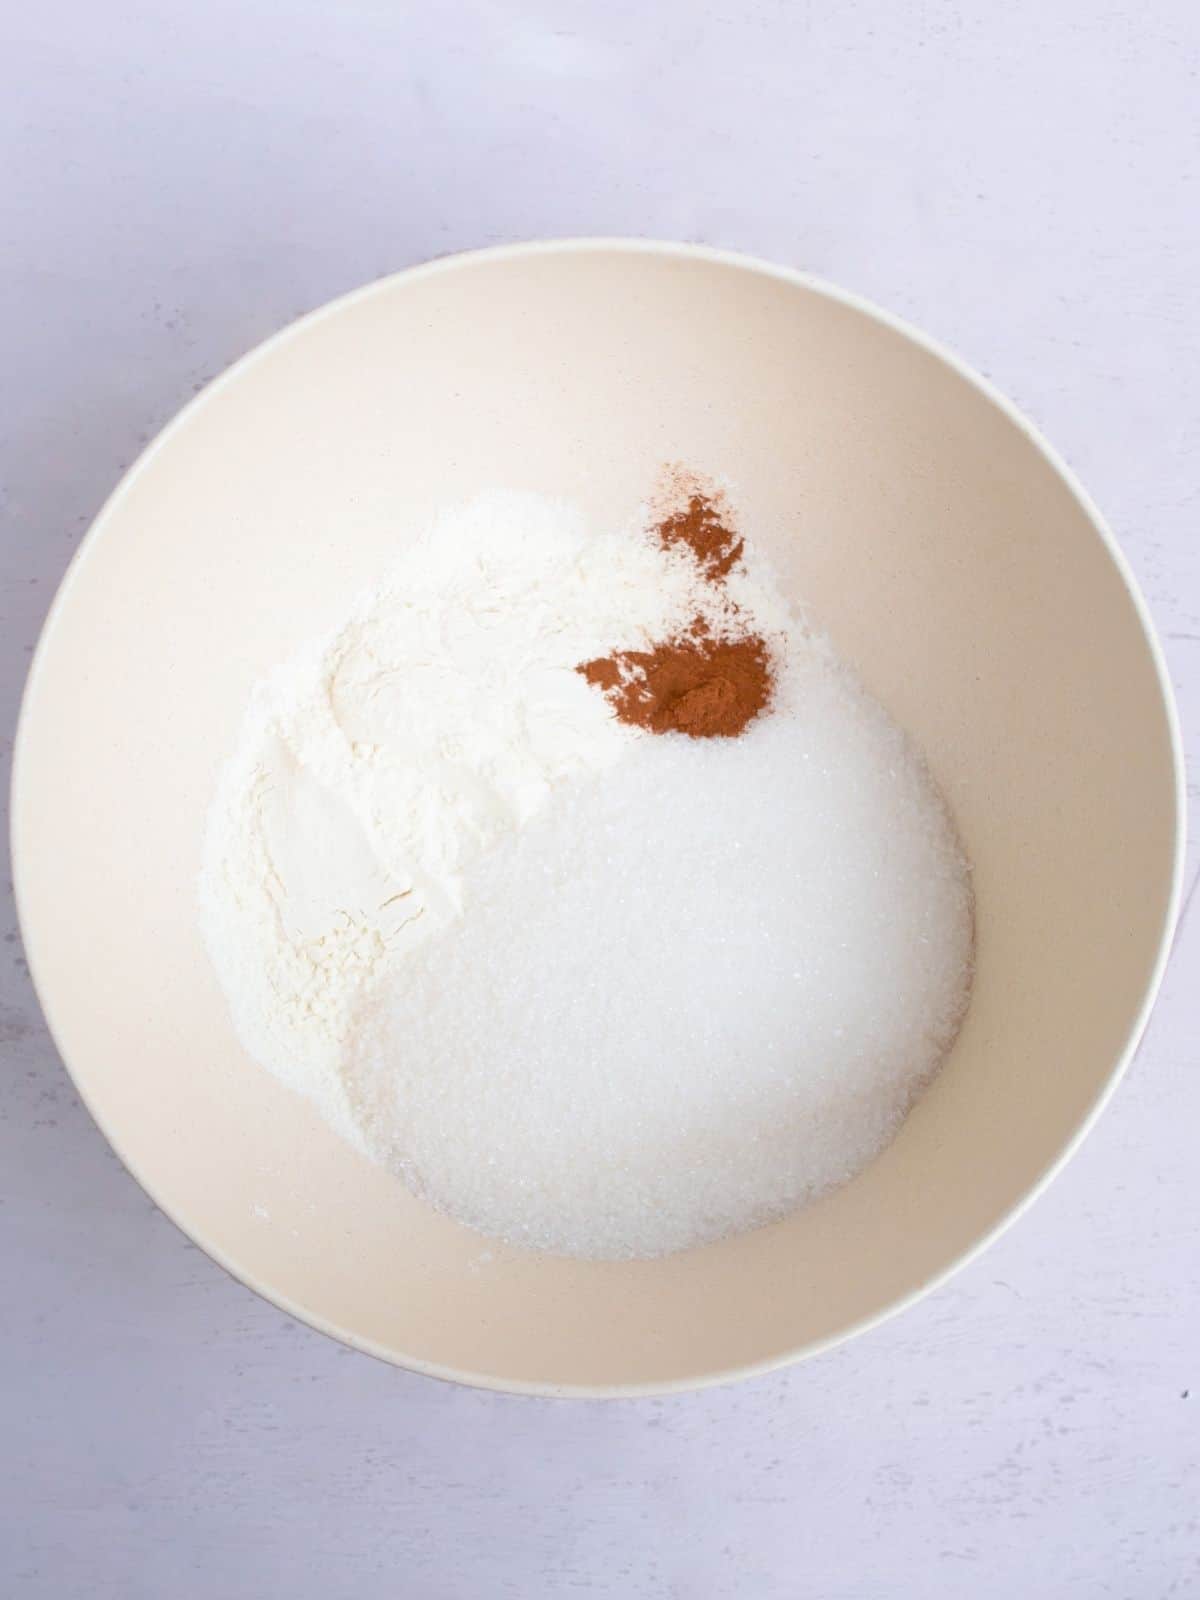 combine sugar, cinnamon and flour in small bowl.